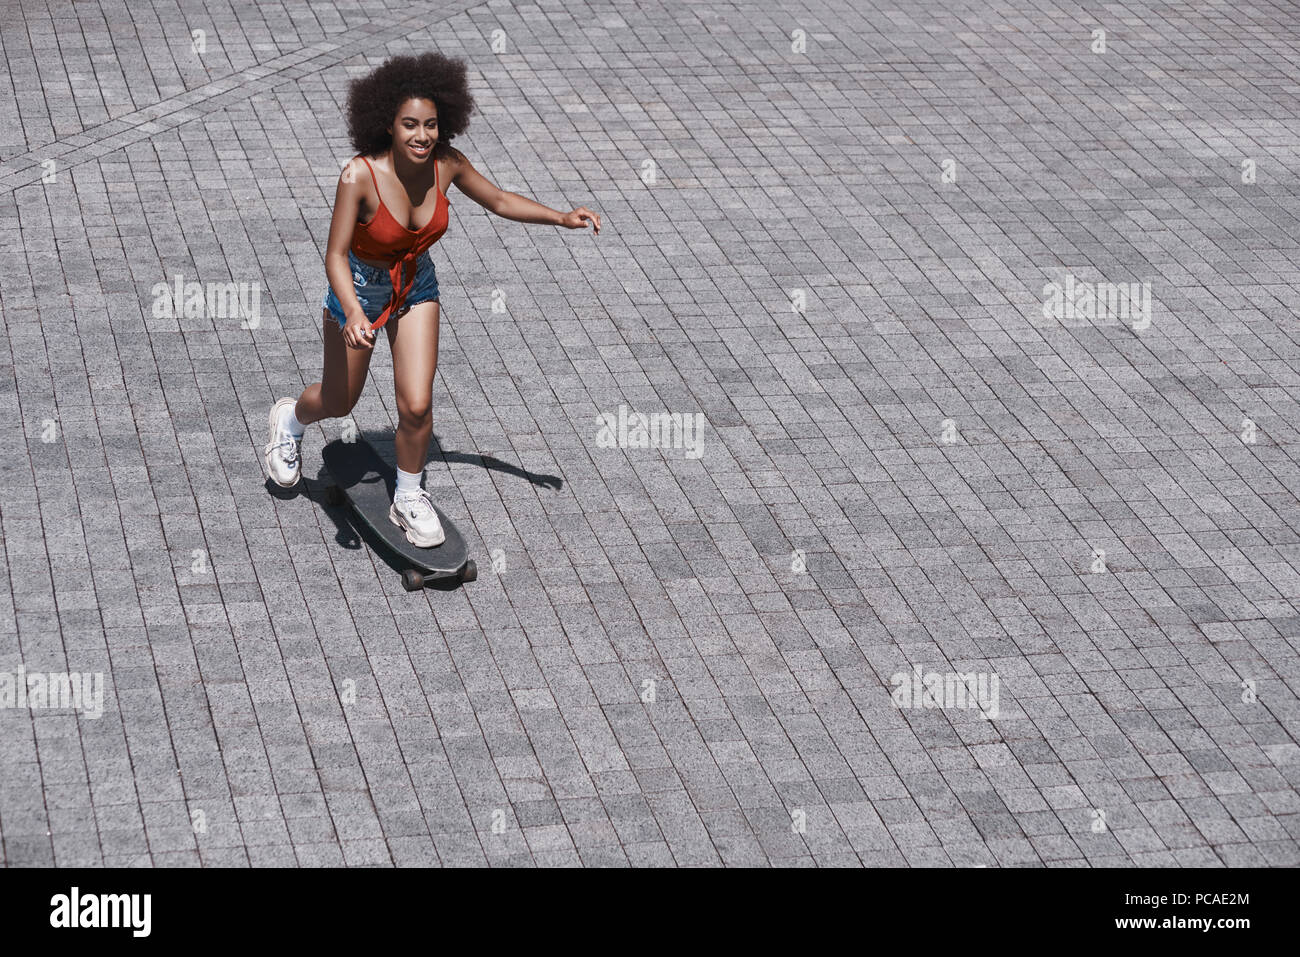 Junge Frau free style auf der Straße reiten Skateboard auf der Ro Stockfoto